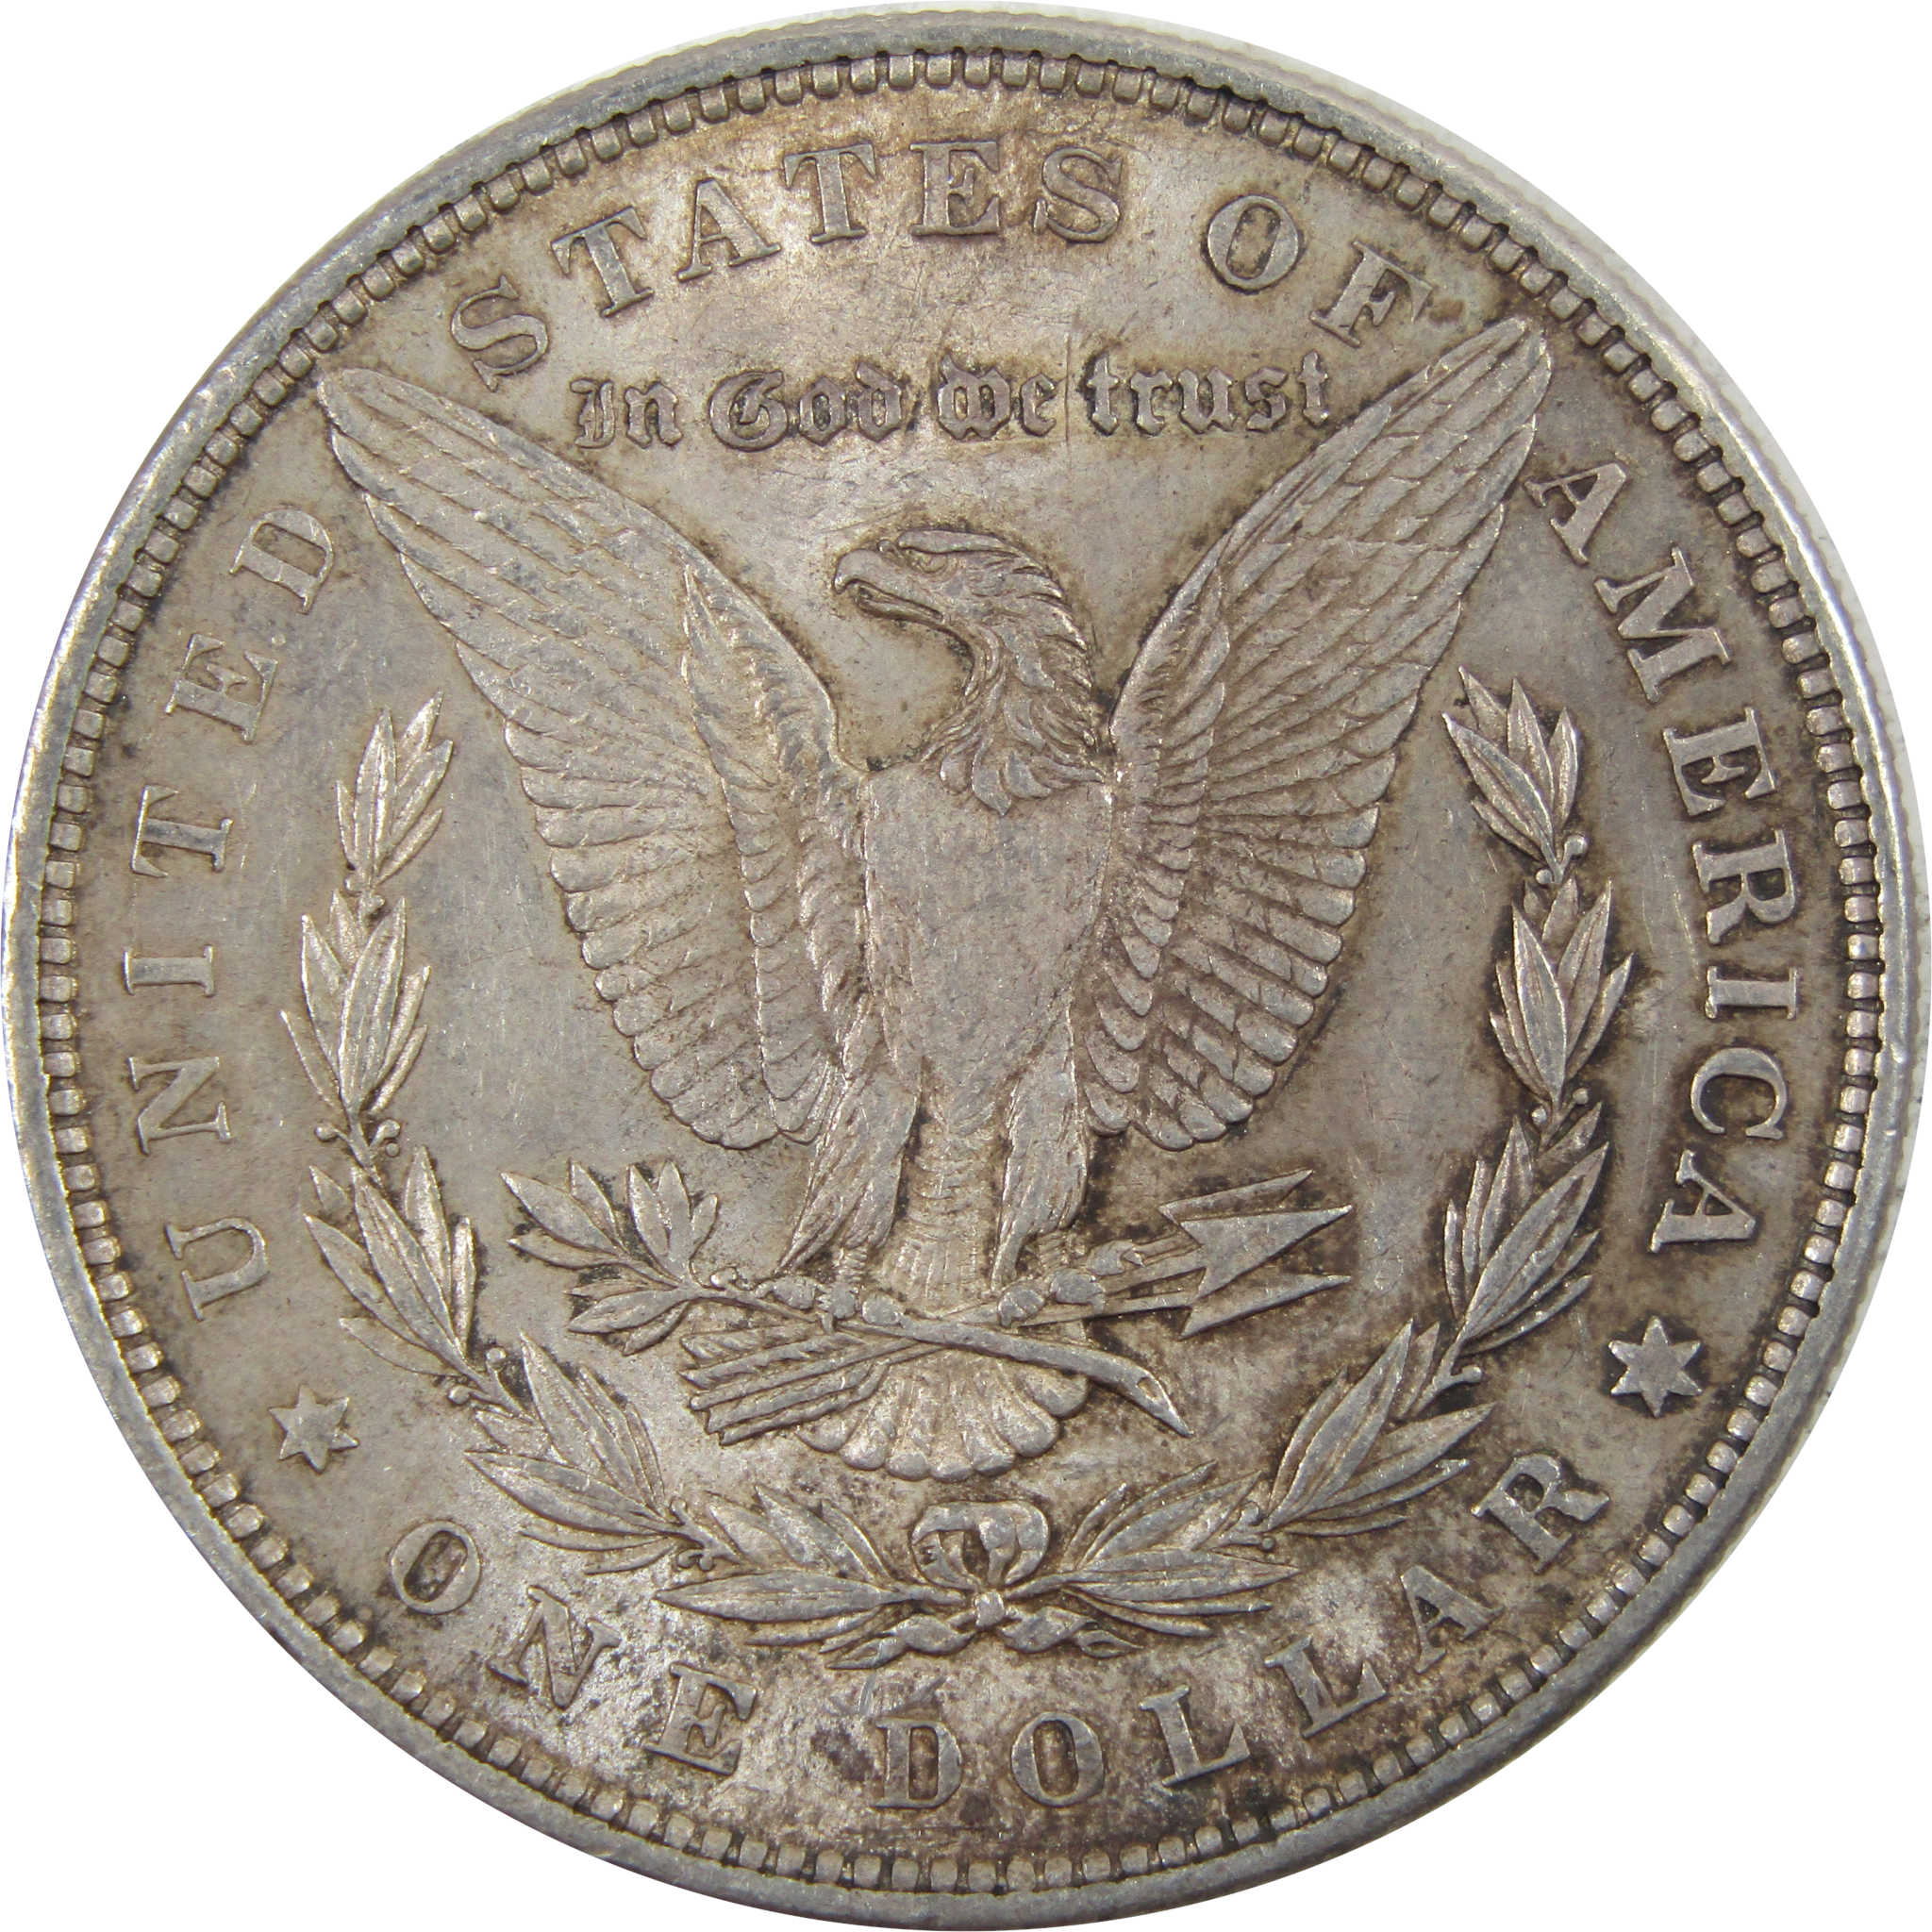 1878 7TF Rev 79 Morgan Dollar Borderline Uncirculated Silver SKU:I5119 - Morgan coin - Morgan silver dollar - Morgan silver dollar for sale - Profile Coins &amp; Collectibles